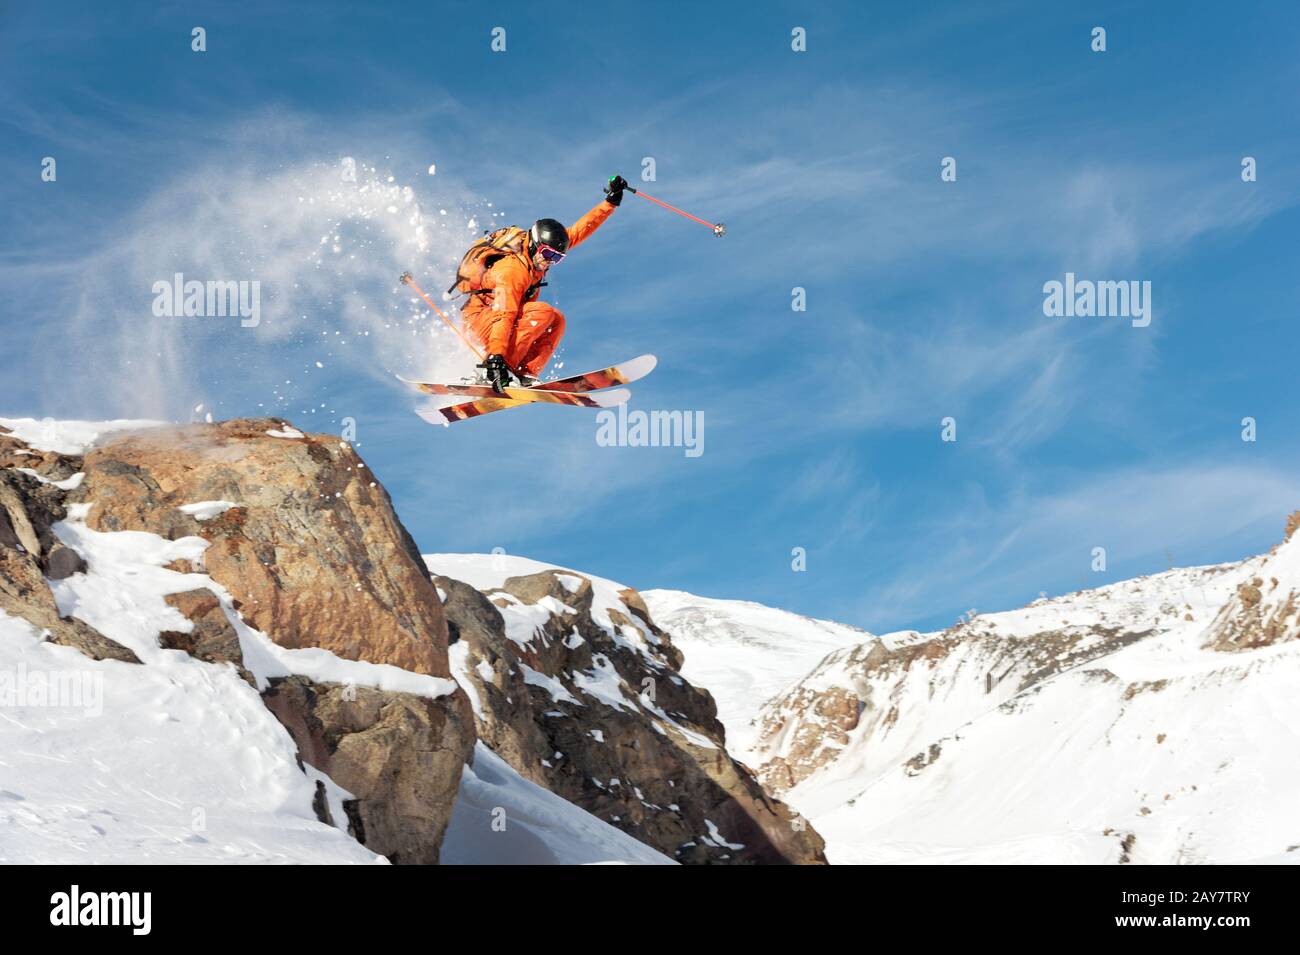 Ein professioneller Skifahrer macht einen Sprung von einer hohen Klippe gegen einen blauen Himmel und hinterlässt eine Spur von Schneepulver in den Bergen Stockfoto